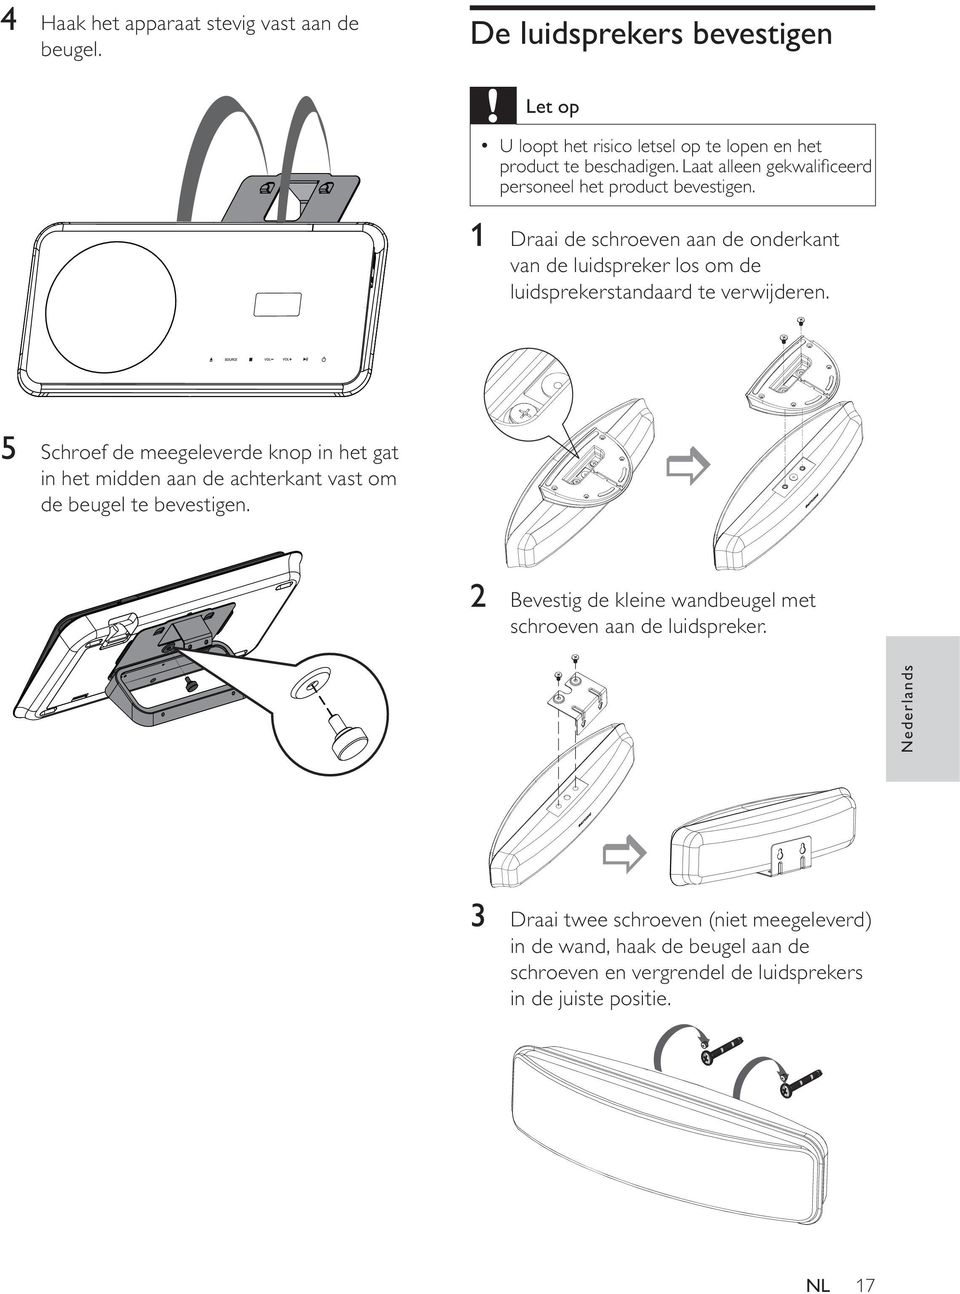 1 Draai de schroeven aan de onderkant van de luidspreker los om de luidsprekerstandaard te verwijderen.